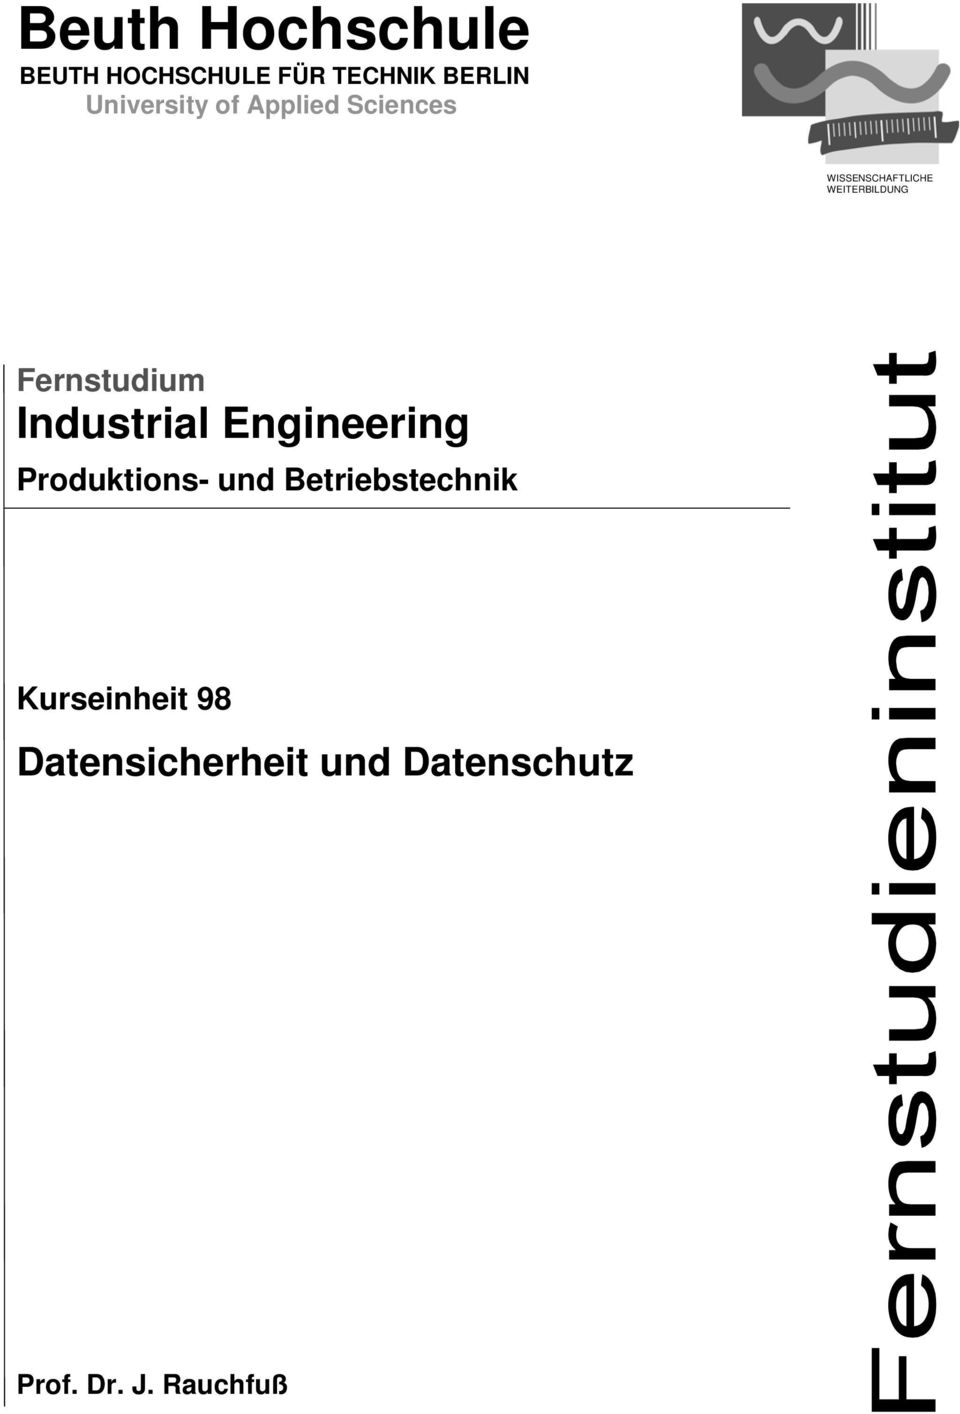 WEITERBILDUNG Fernstudium Industrial Engineering